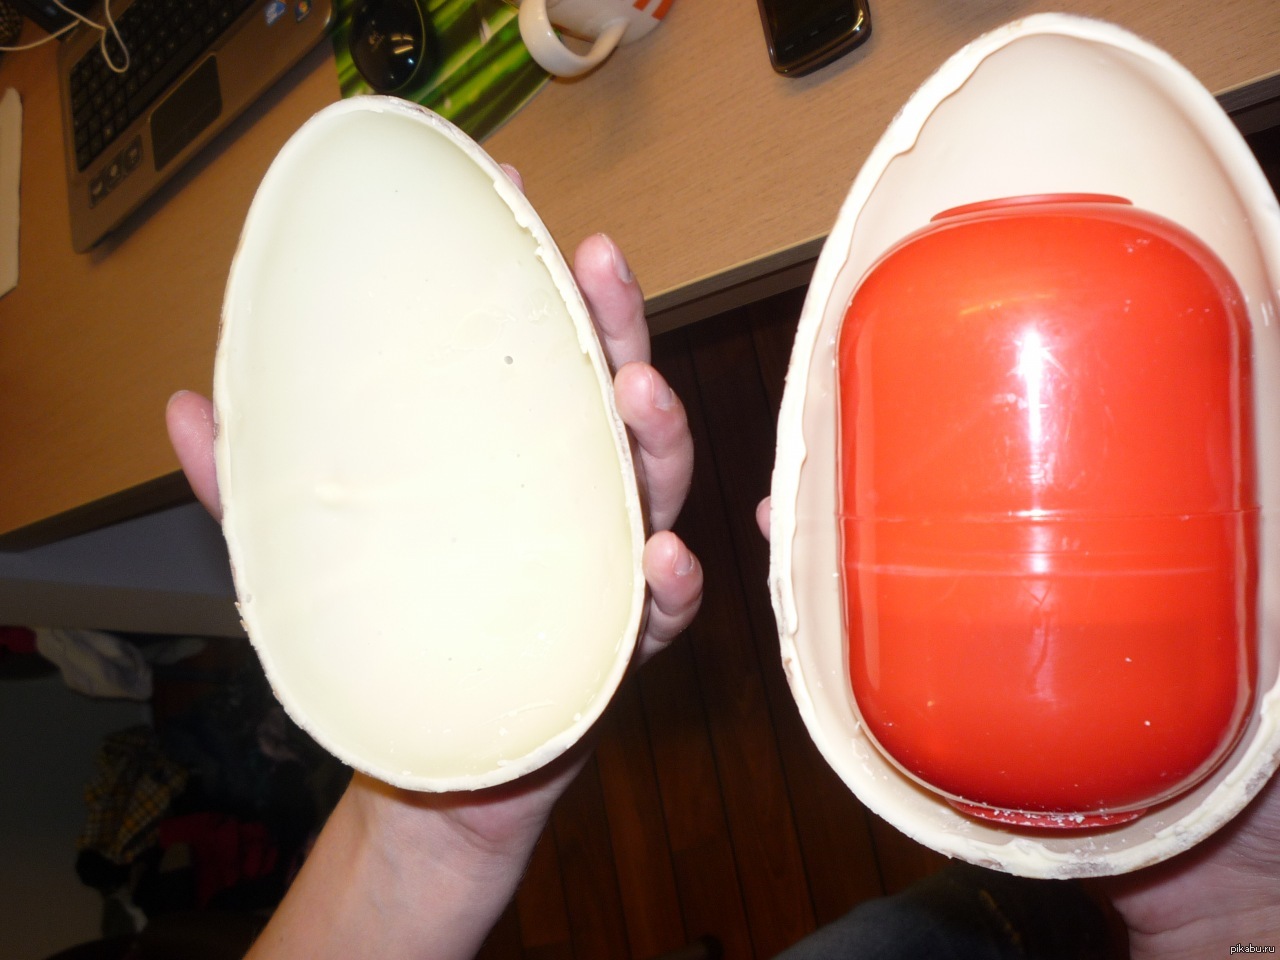 Сюрприз что означает. Самый большой Киндер сюрприз. Большое Киндер яйцо. Самое большое Киндер яйцо. Самый гигантский Киндер сюрприз.